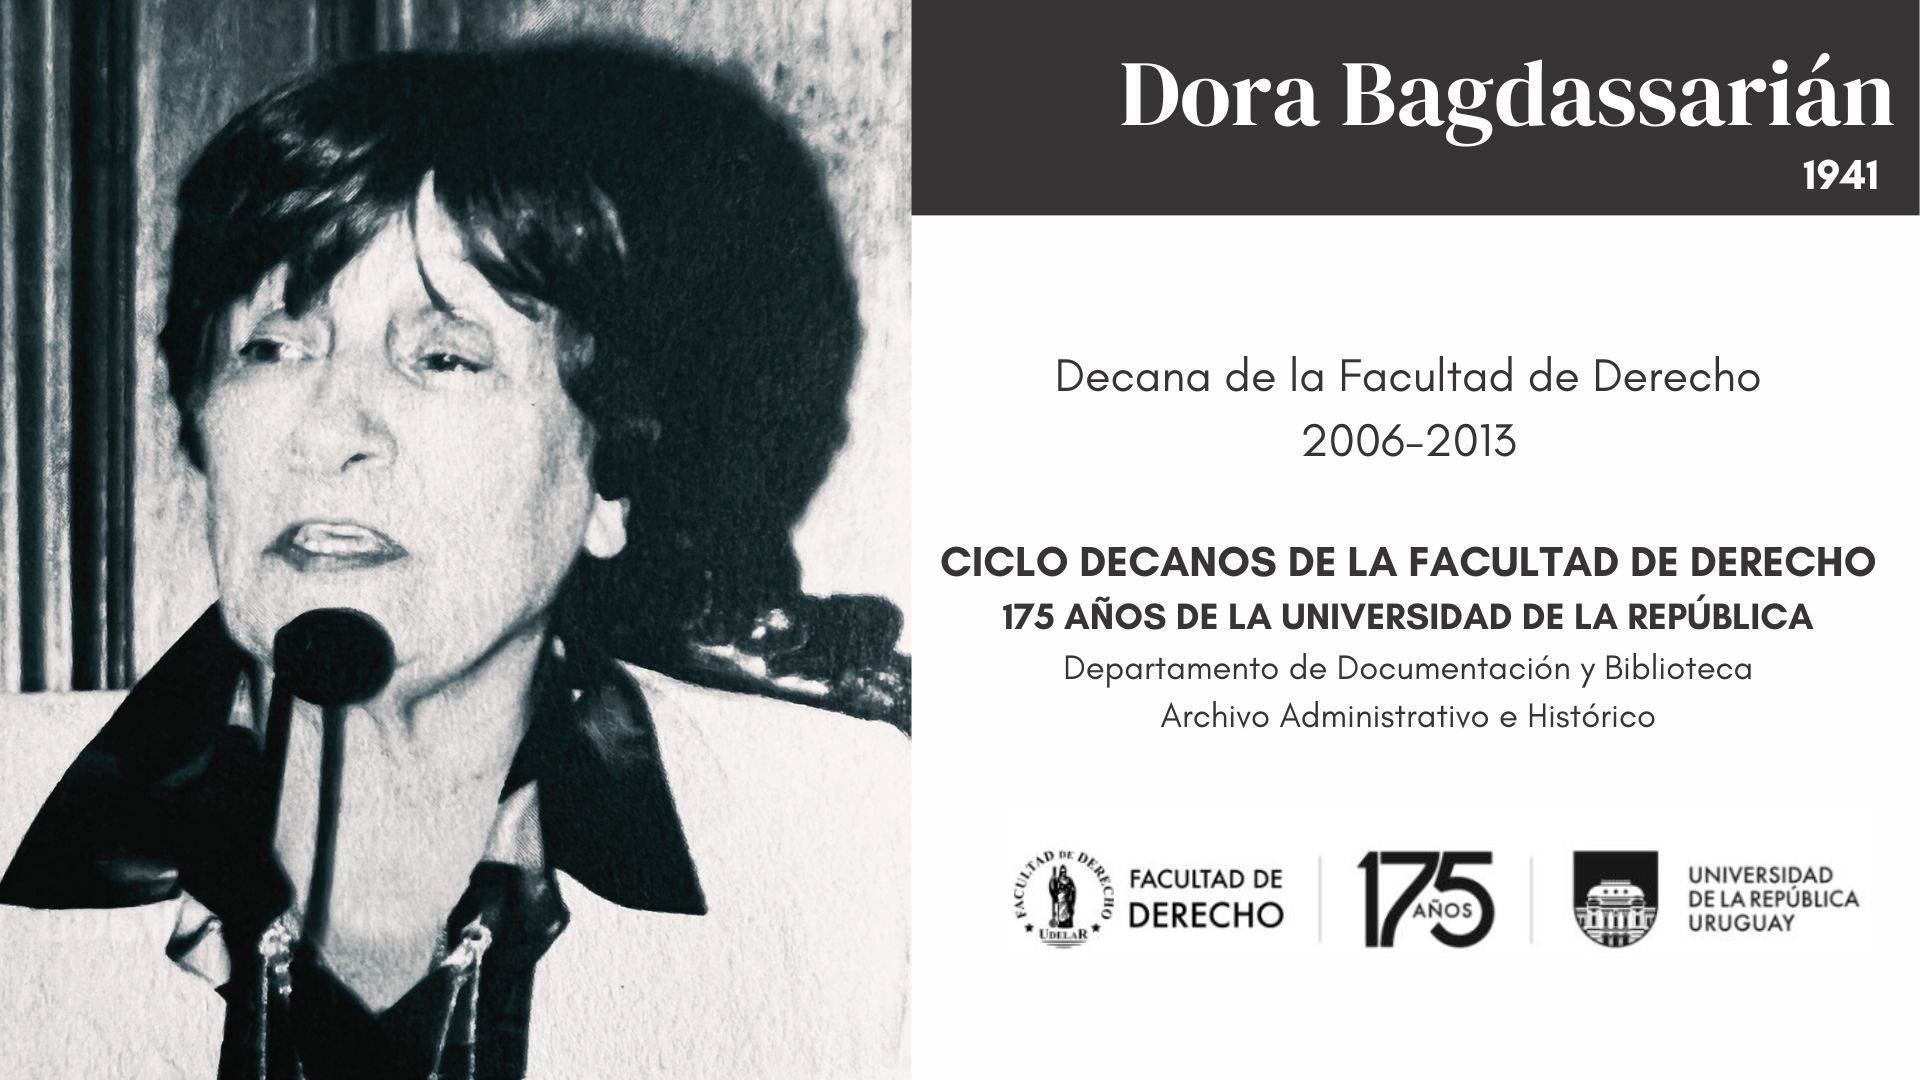 DECANAS DE LA FACULTAD DE DERECHO - DORA BAGDASSARIÁN